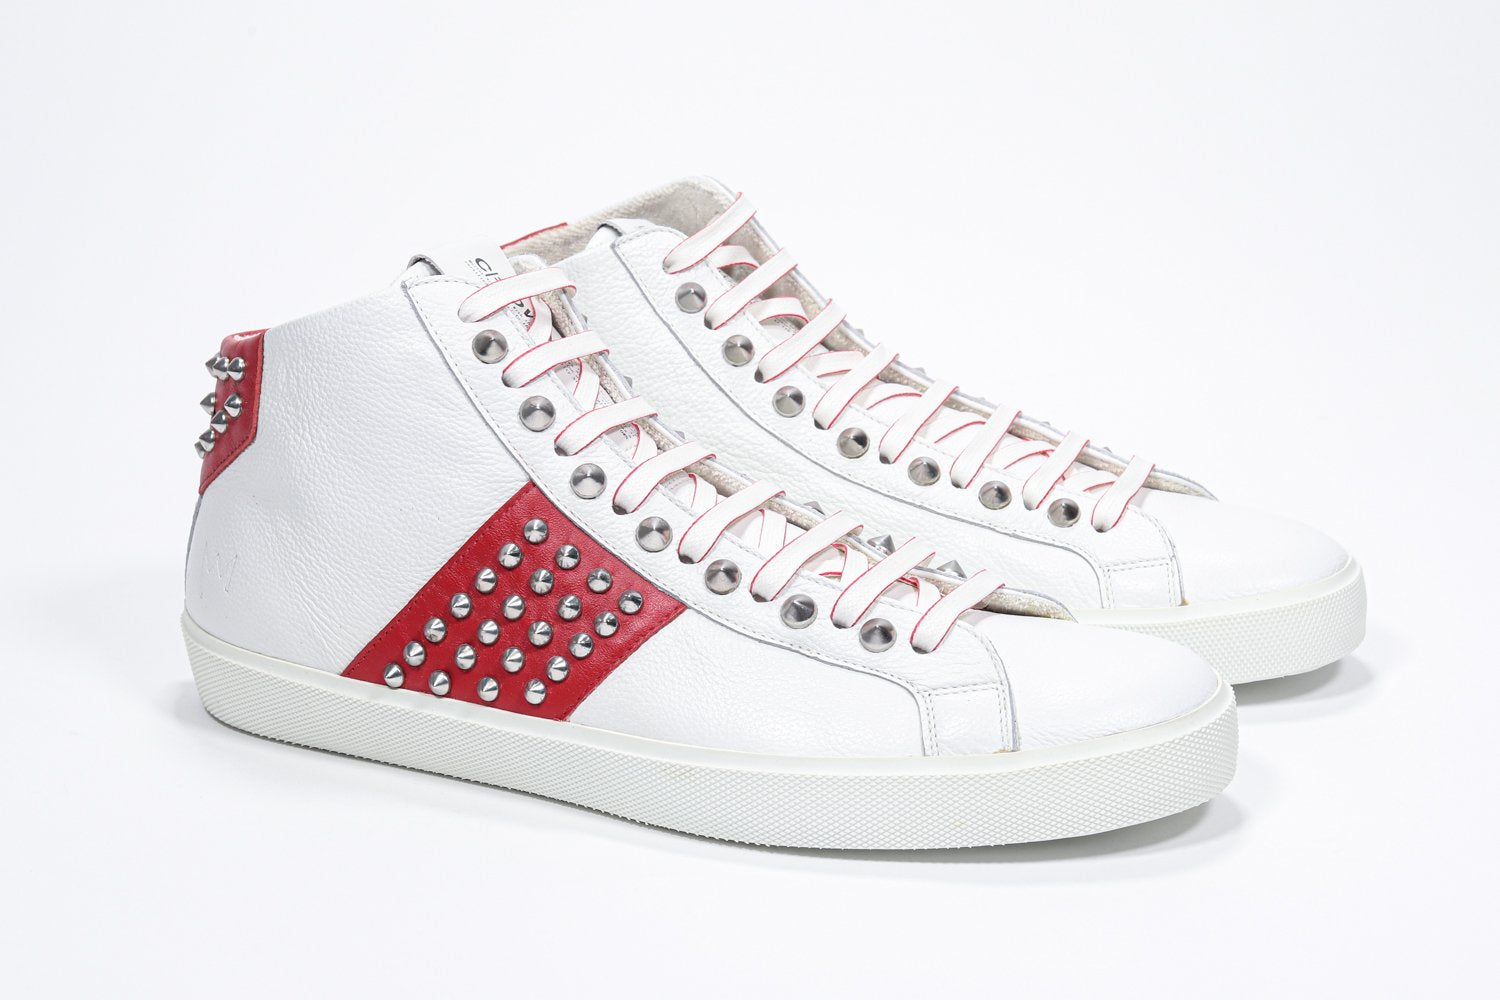 Vue de trois quarts de l'avant d'un top moyen blanc et rouge sneaker. Tige en cuir avec clous, fermeture à glissière interne et semelle en caoutchouc blanc.